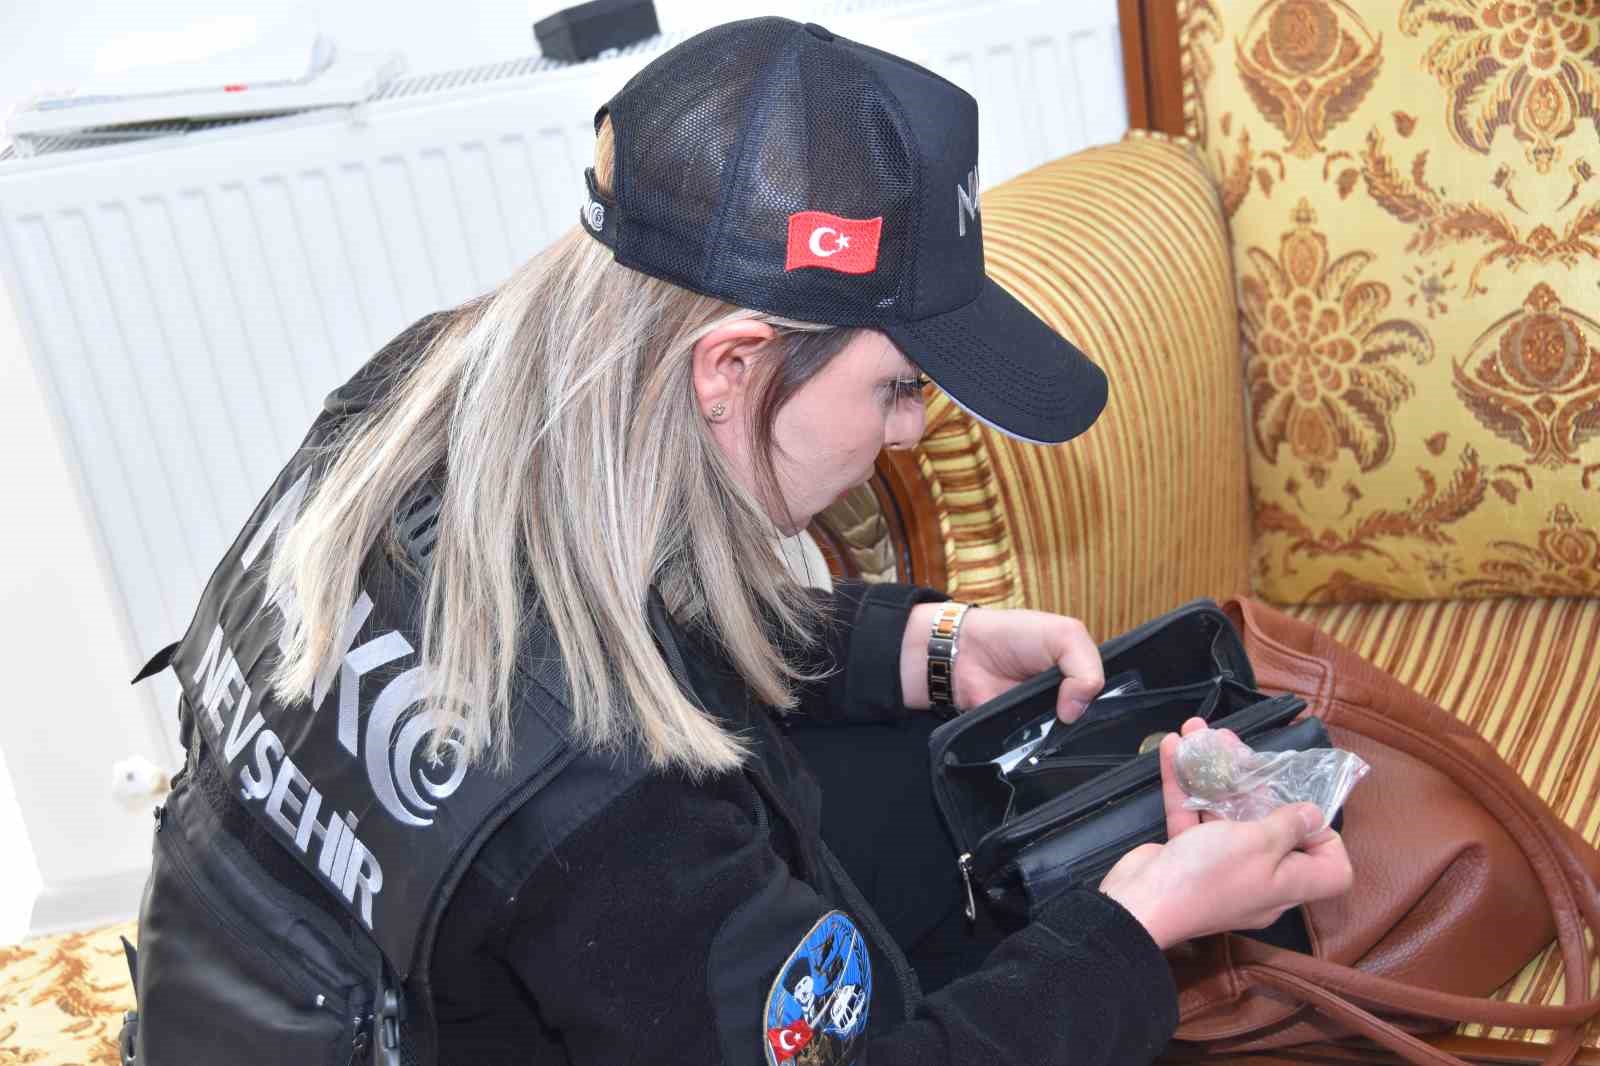 Nevşehir’de helikopterli narkotik operasyonu: 57 gözaltı
